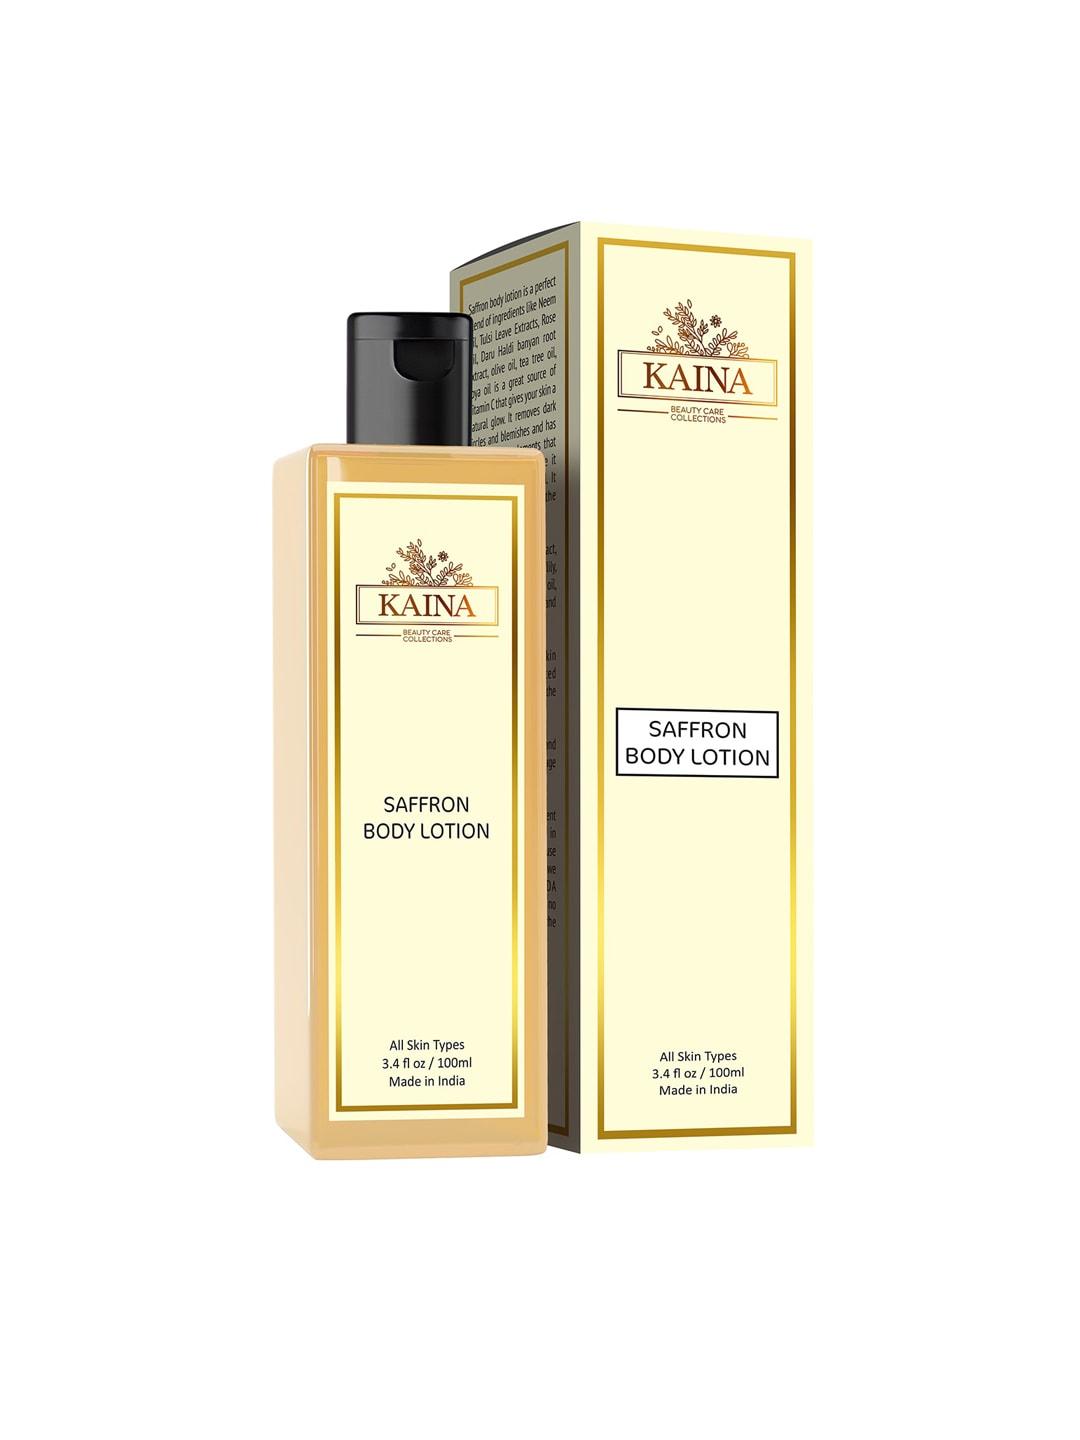 Kaina skincare Saffron Body Lotion with Tea Tree Oil - 200ml